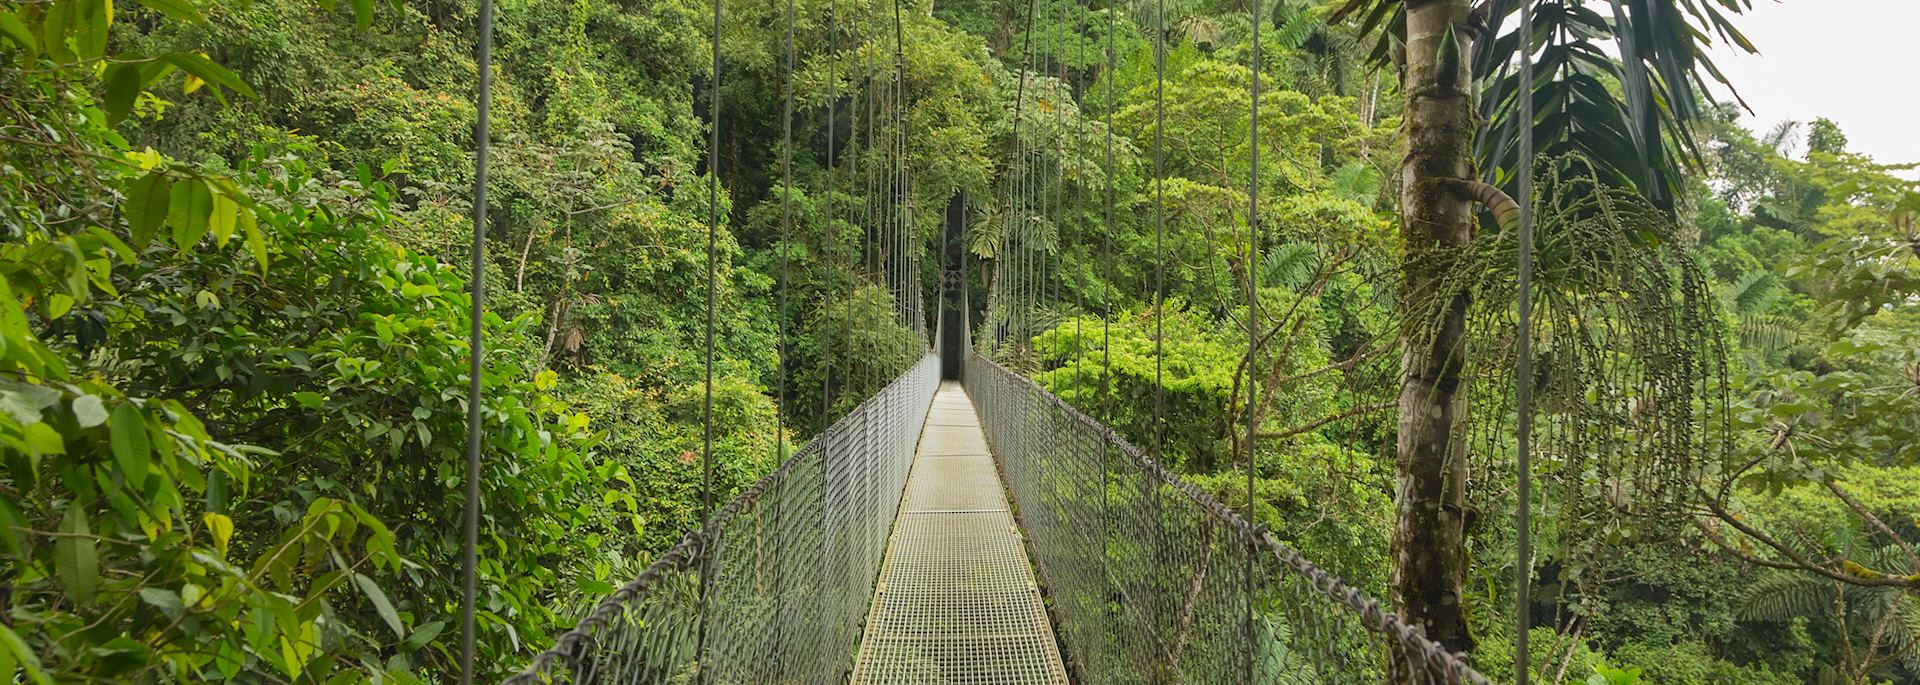 Cloud Forest bridge, Costa Rica